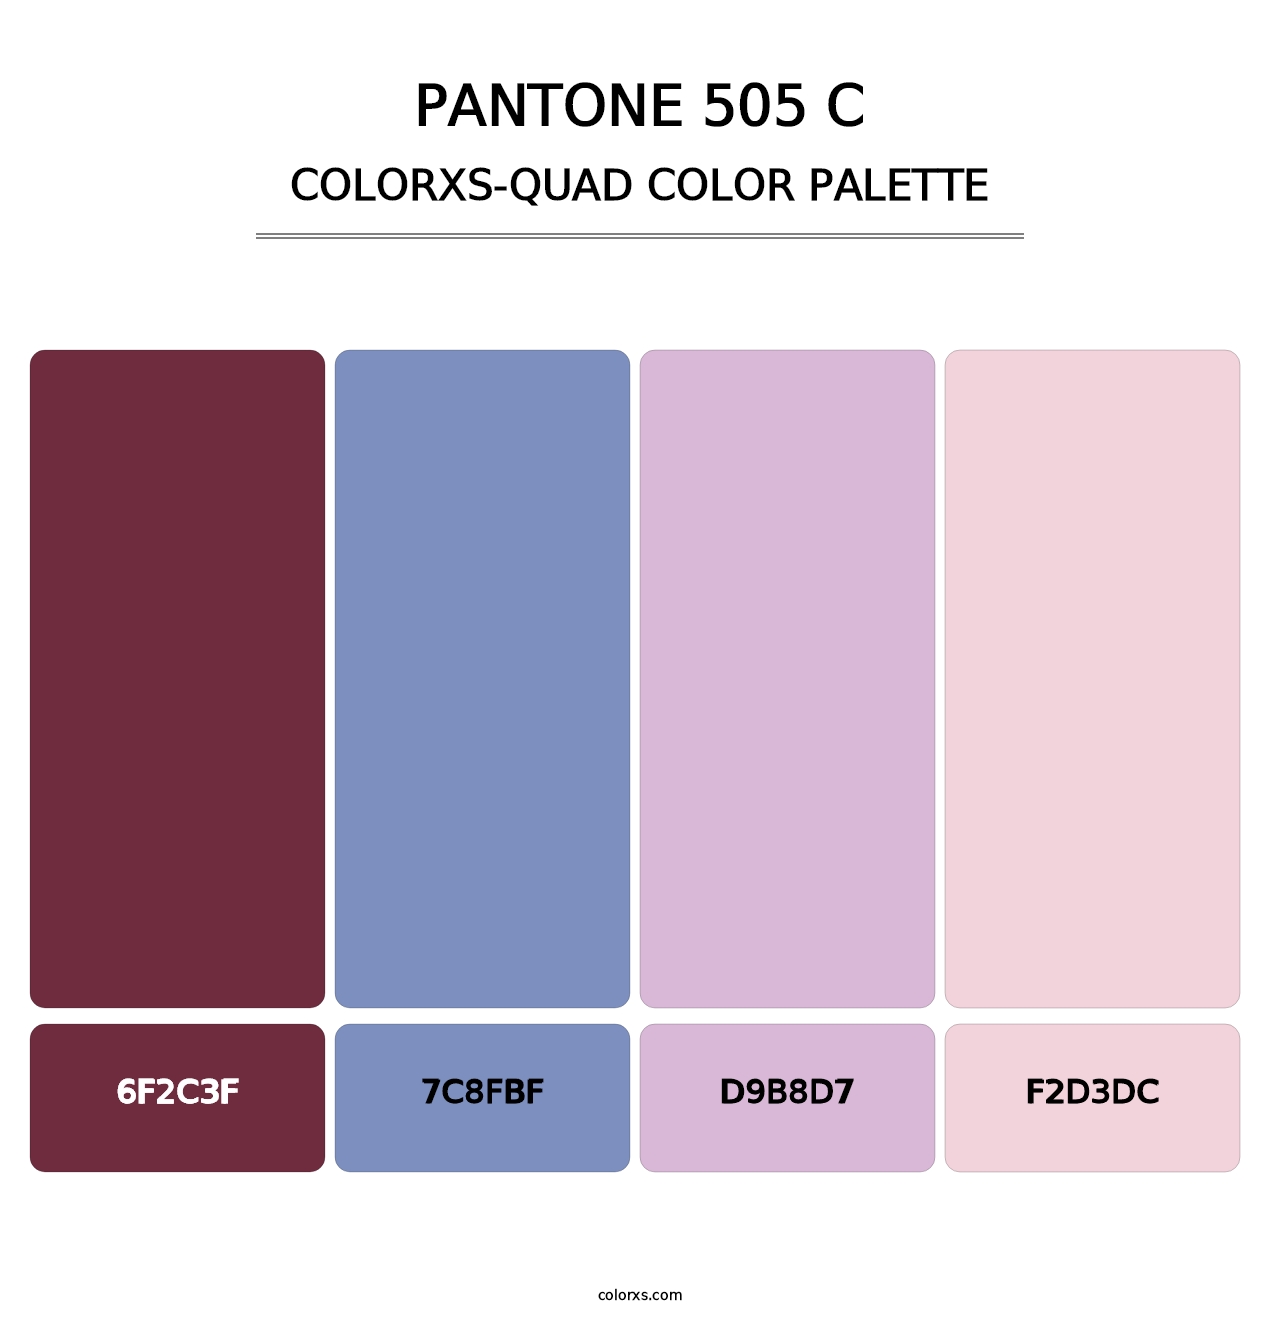 PANTONE 505 C - Colorxs Quad Palette